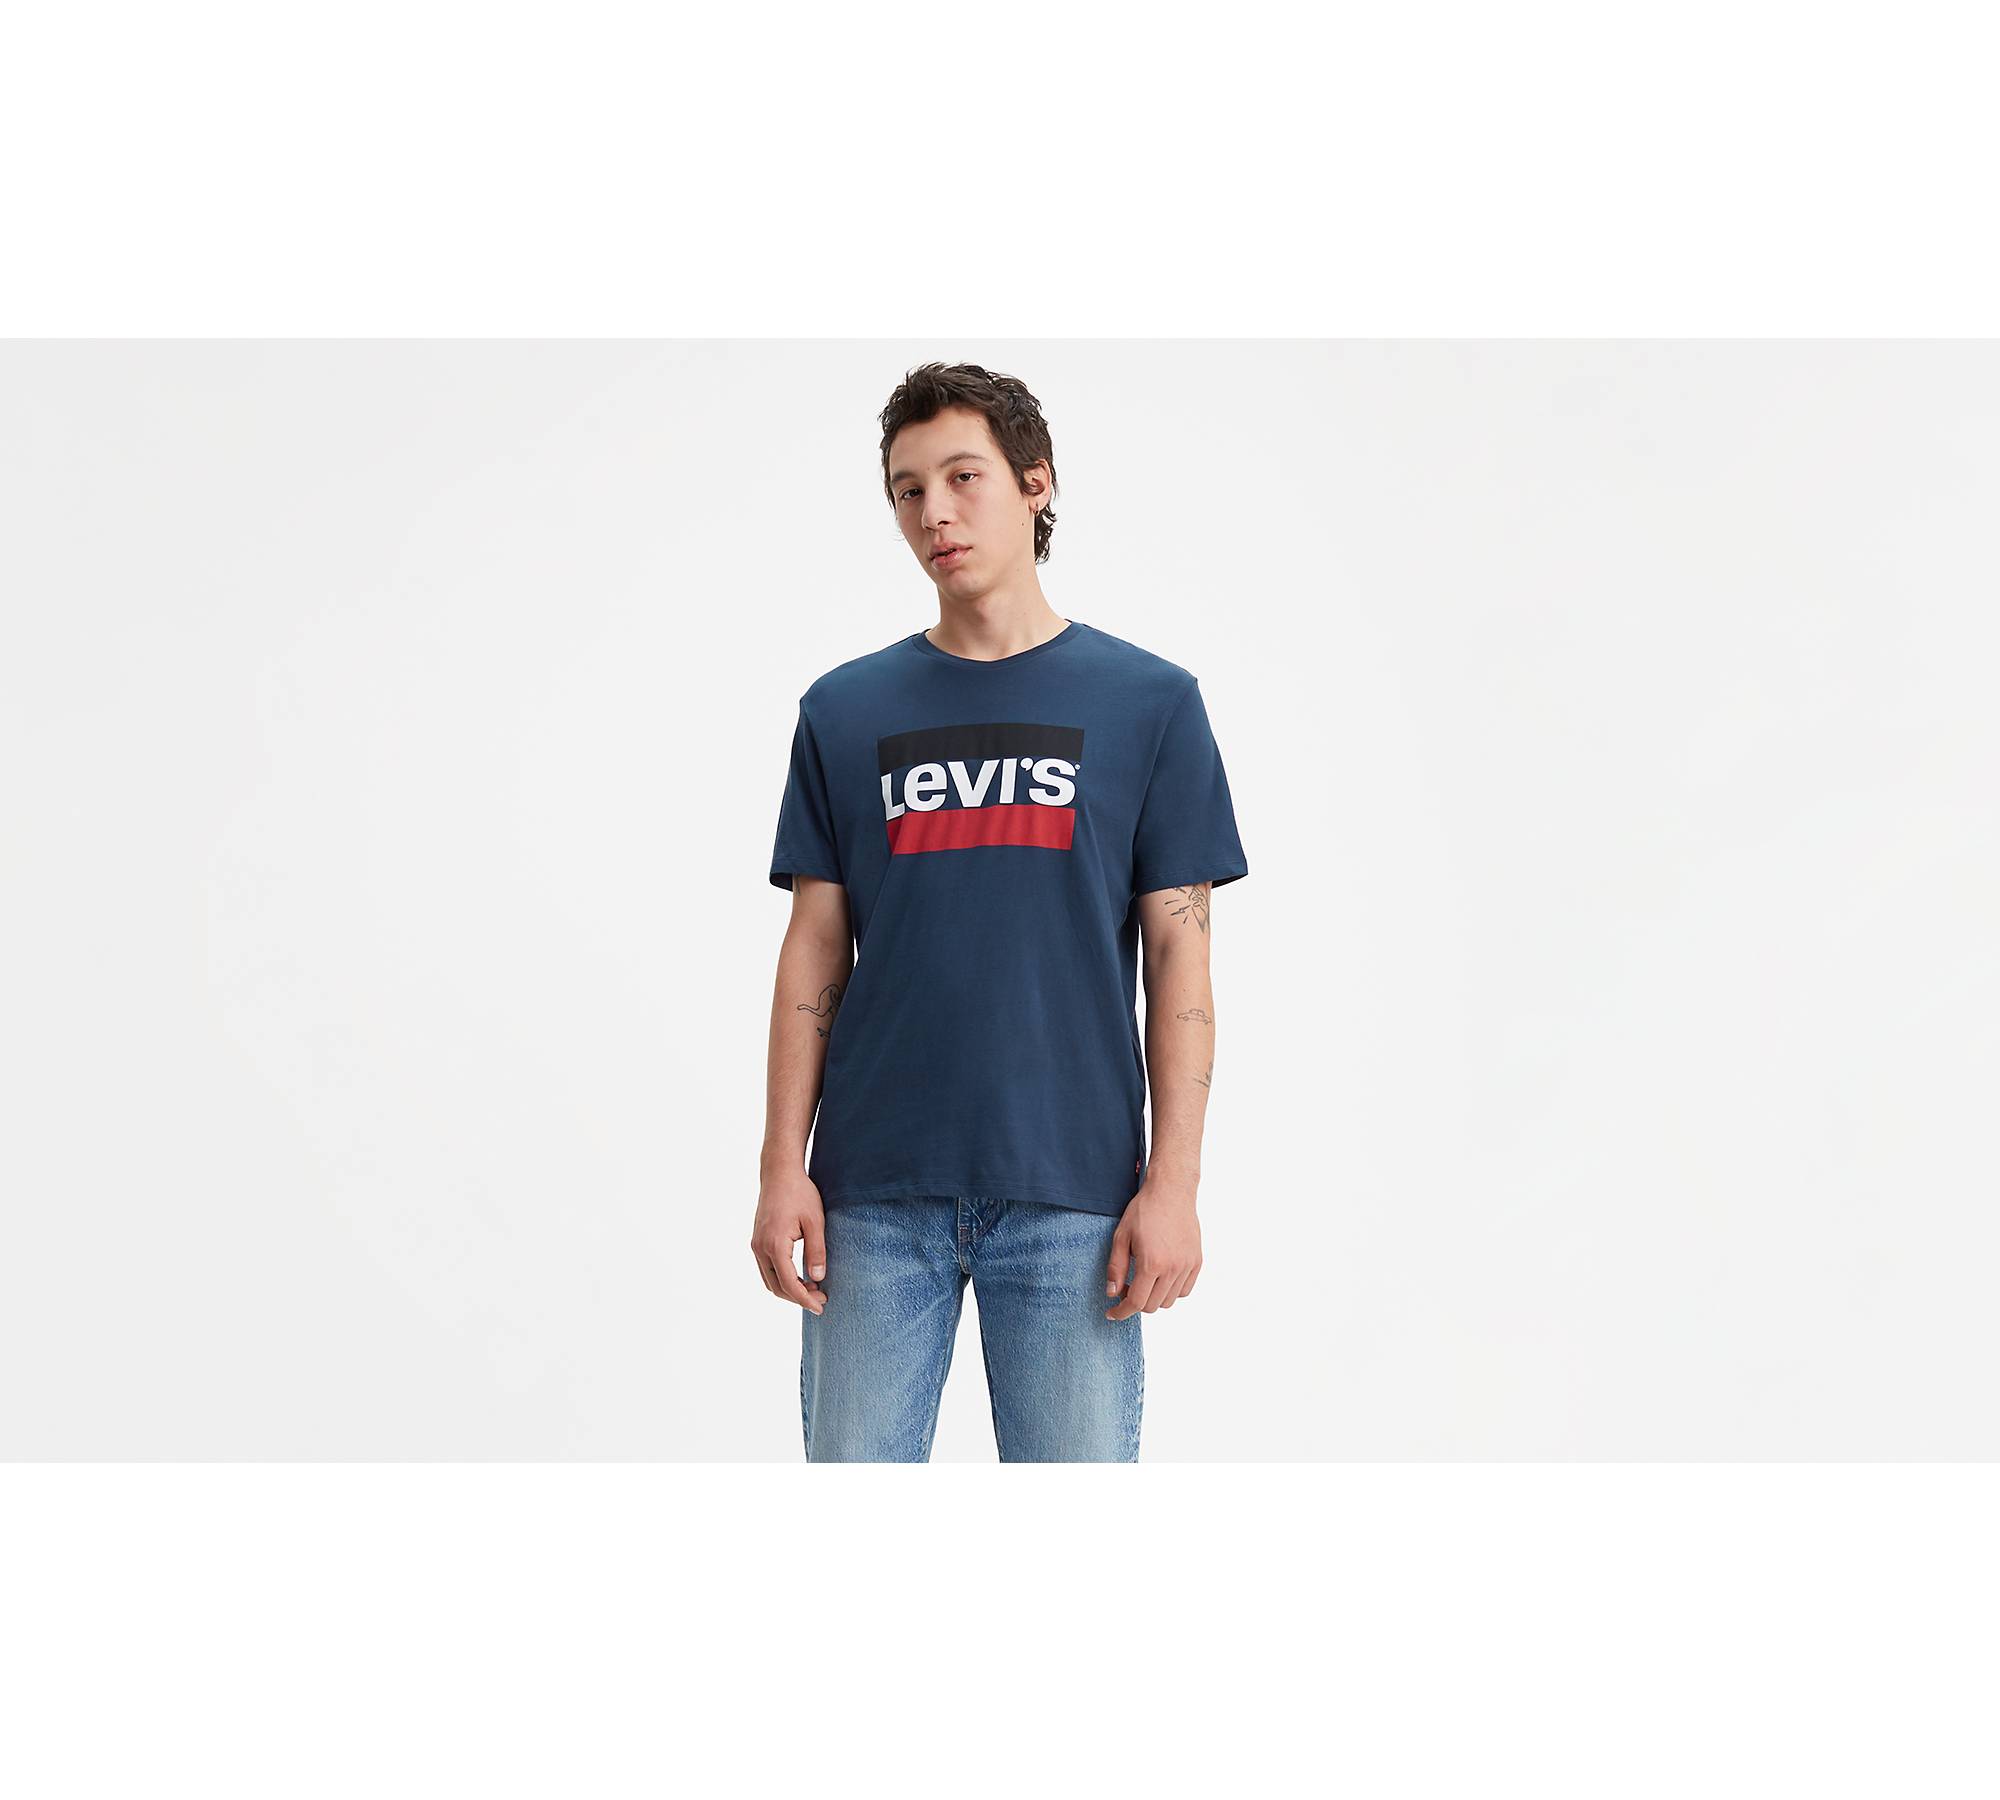 T-shirt homme tricolore Levi's, bleu/rouge